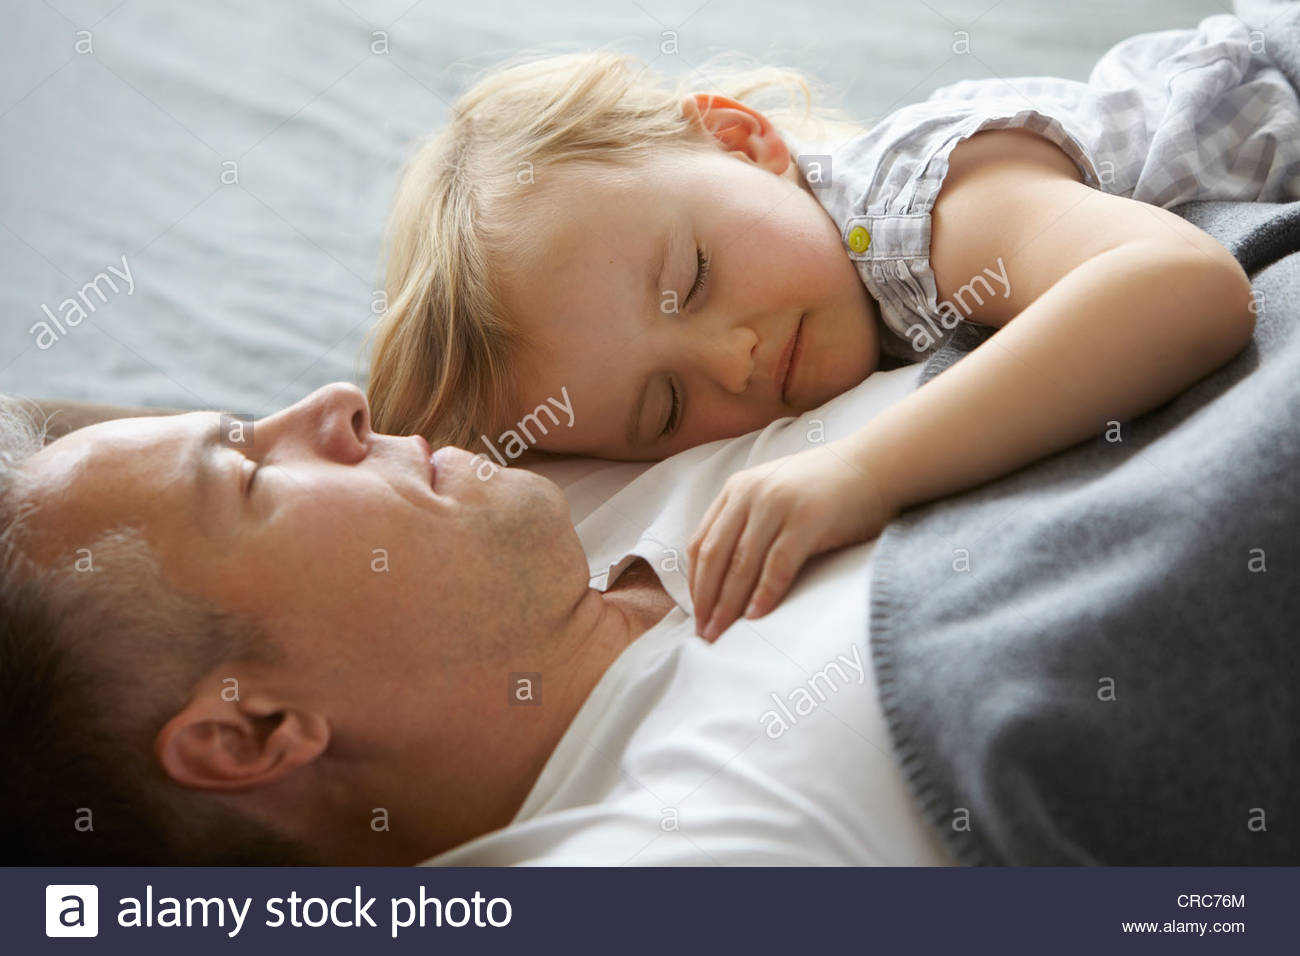 Дочка папе в трусы. Папа целует спящую дочь.